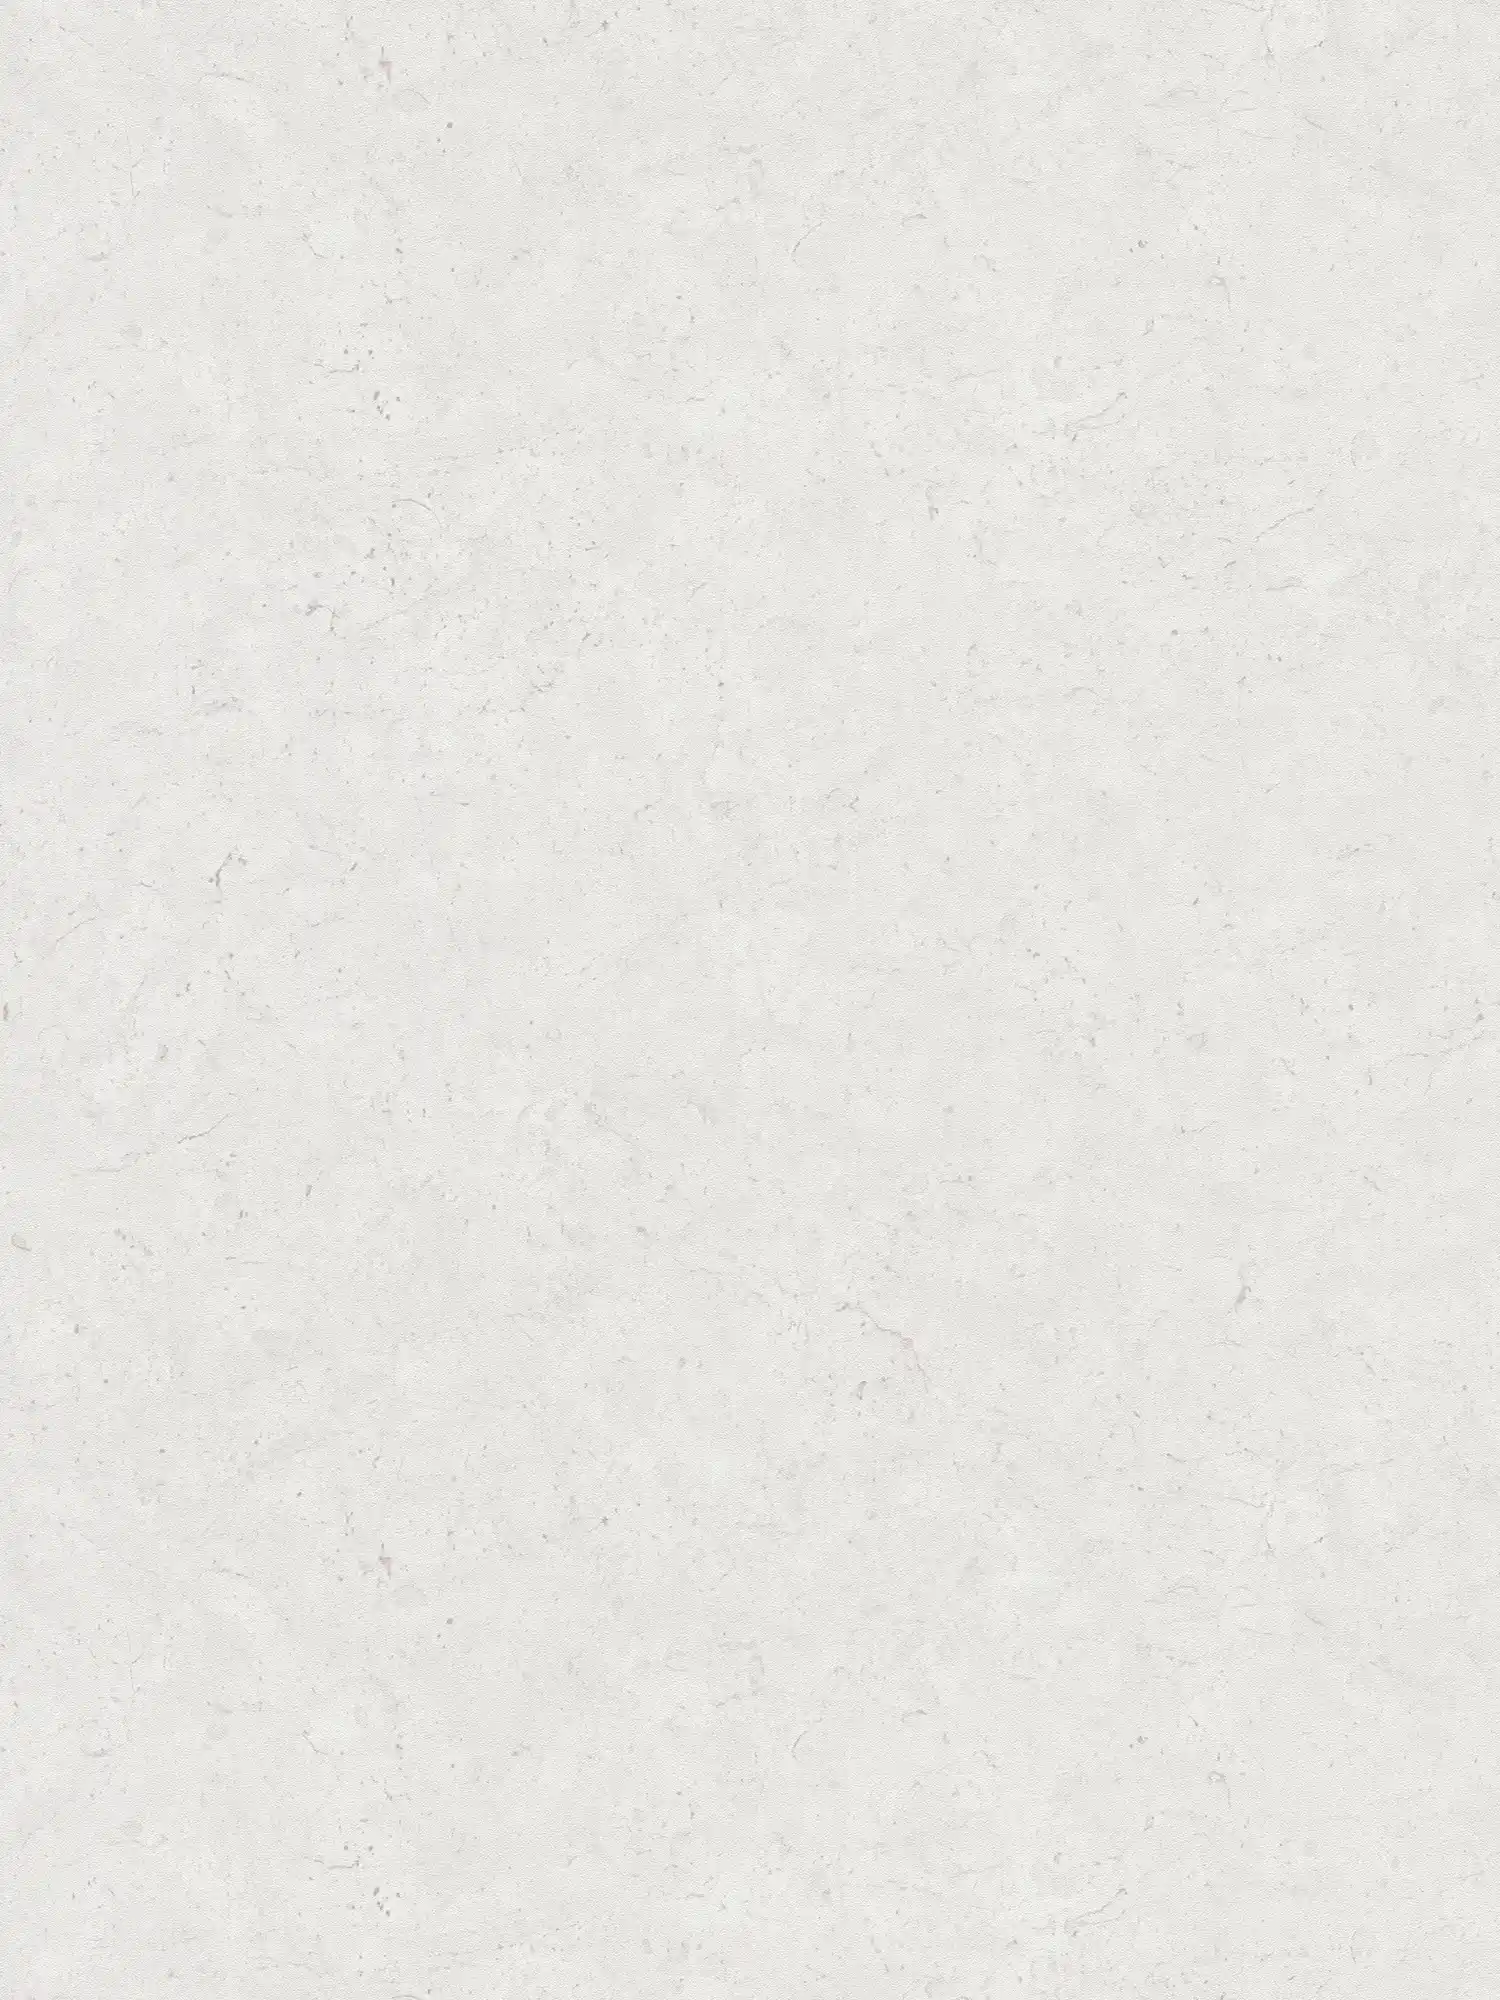 Carta da parati in tessuto non tessuto a tinta unita con effetto cemento - grigio, bianco
